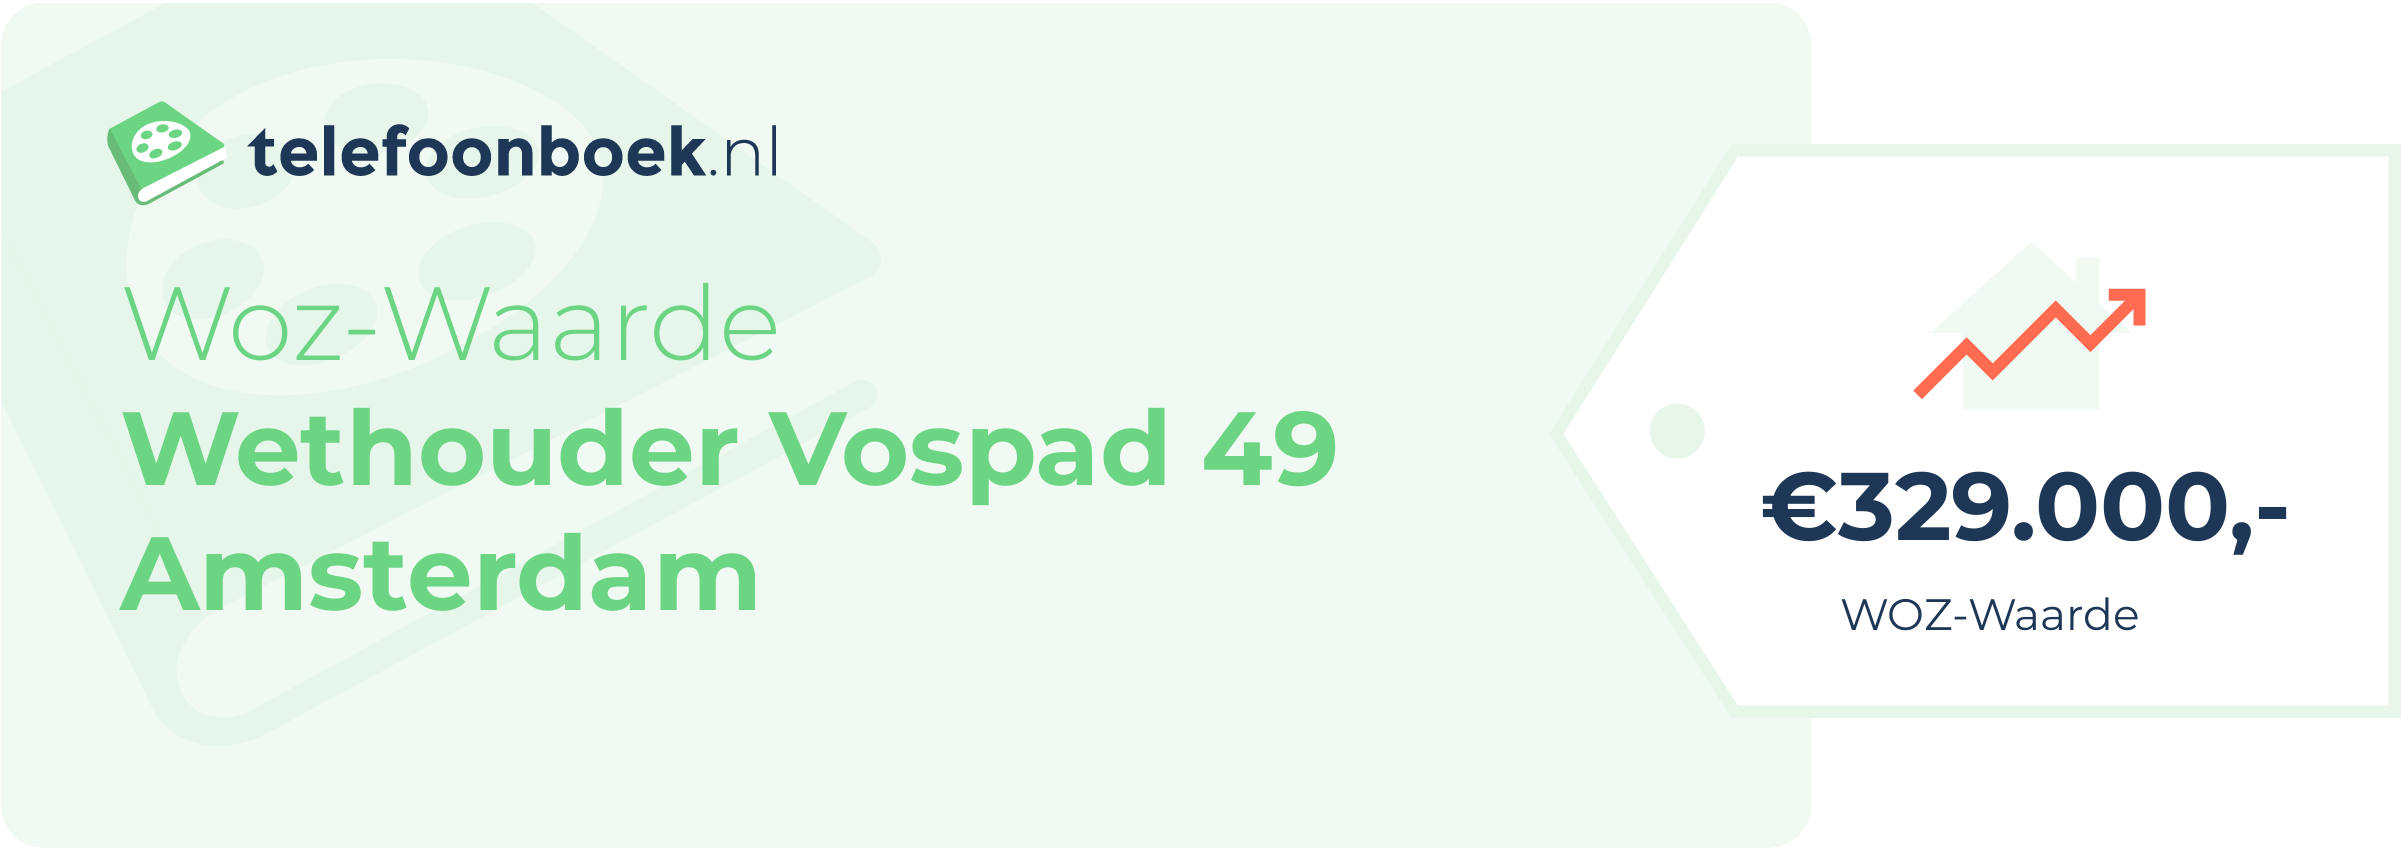 WOZ-waarde Wethouder Vospad 49 Amsterdam